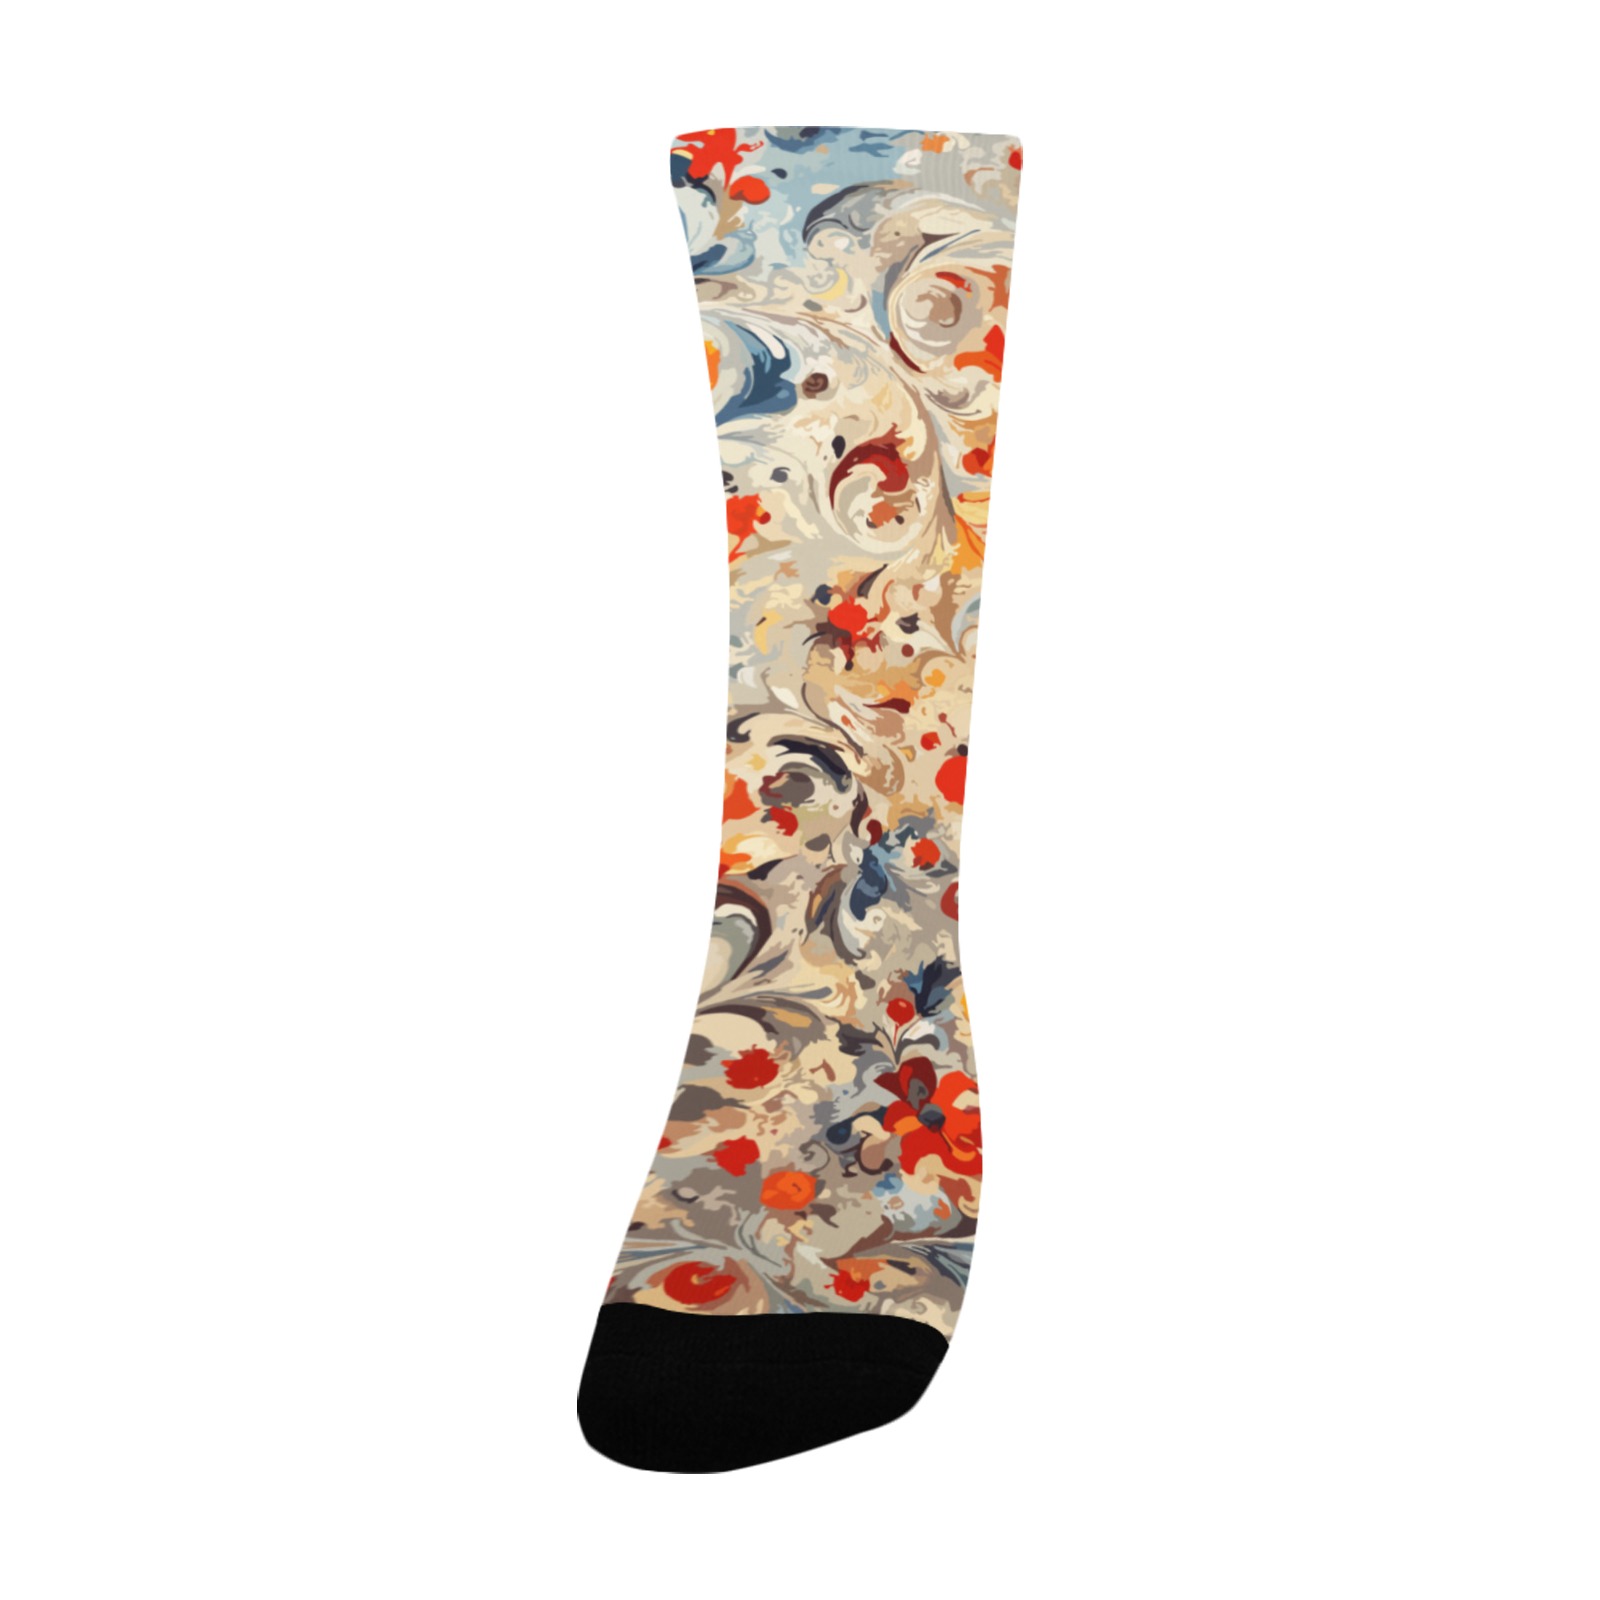 Striking floral abstract art. Fantasy flowers art Custom Socks for Women